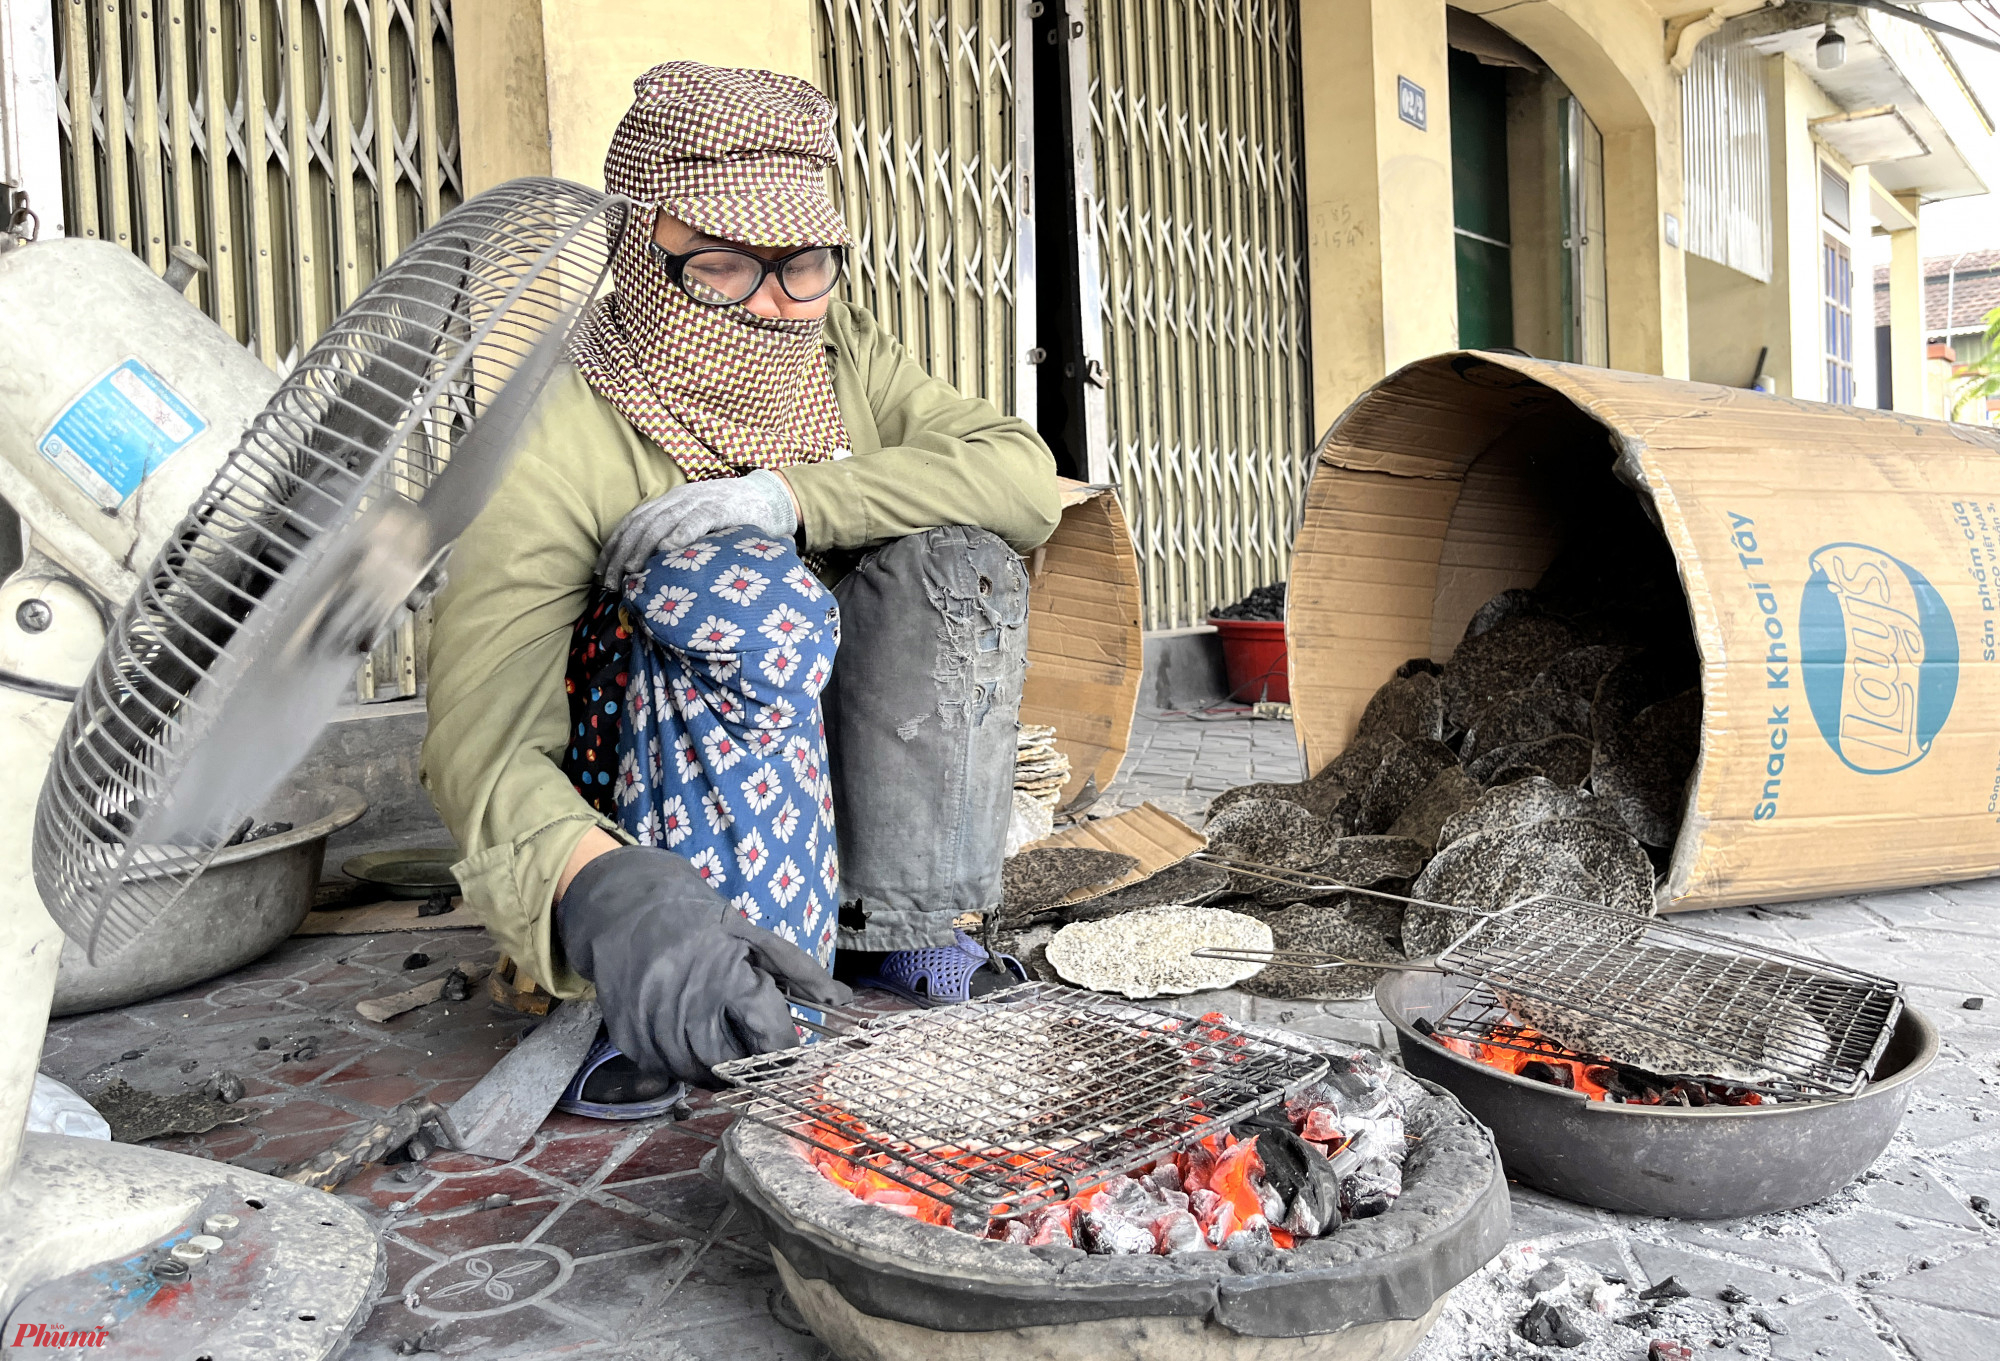 Bà Nguyễn Thị Vinh (52 tuổi) nói rằng, nướng bánh là công việc vất vả, nặng nhọc nhất trong các công đoạn làm bánh đa. Bất kể mùa hè nóng nực hay mùa đông buốt giá, thợ nướng bánh bao giờ cũng nhễ nhại mồ hôi do tiếp xúc quá gần với bếp than đỏ rực. 